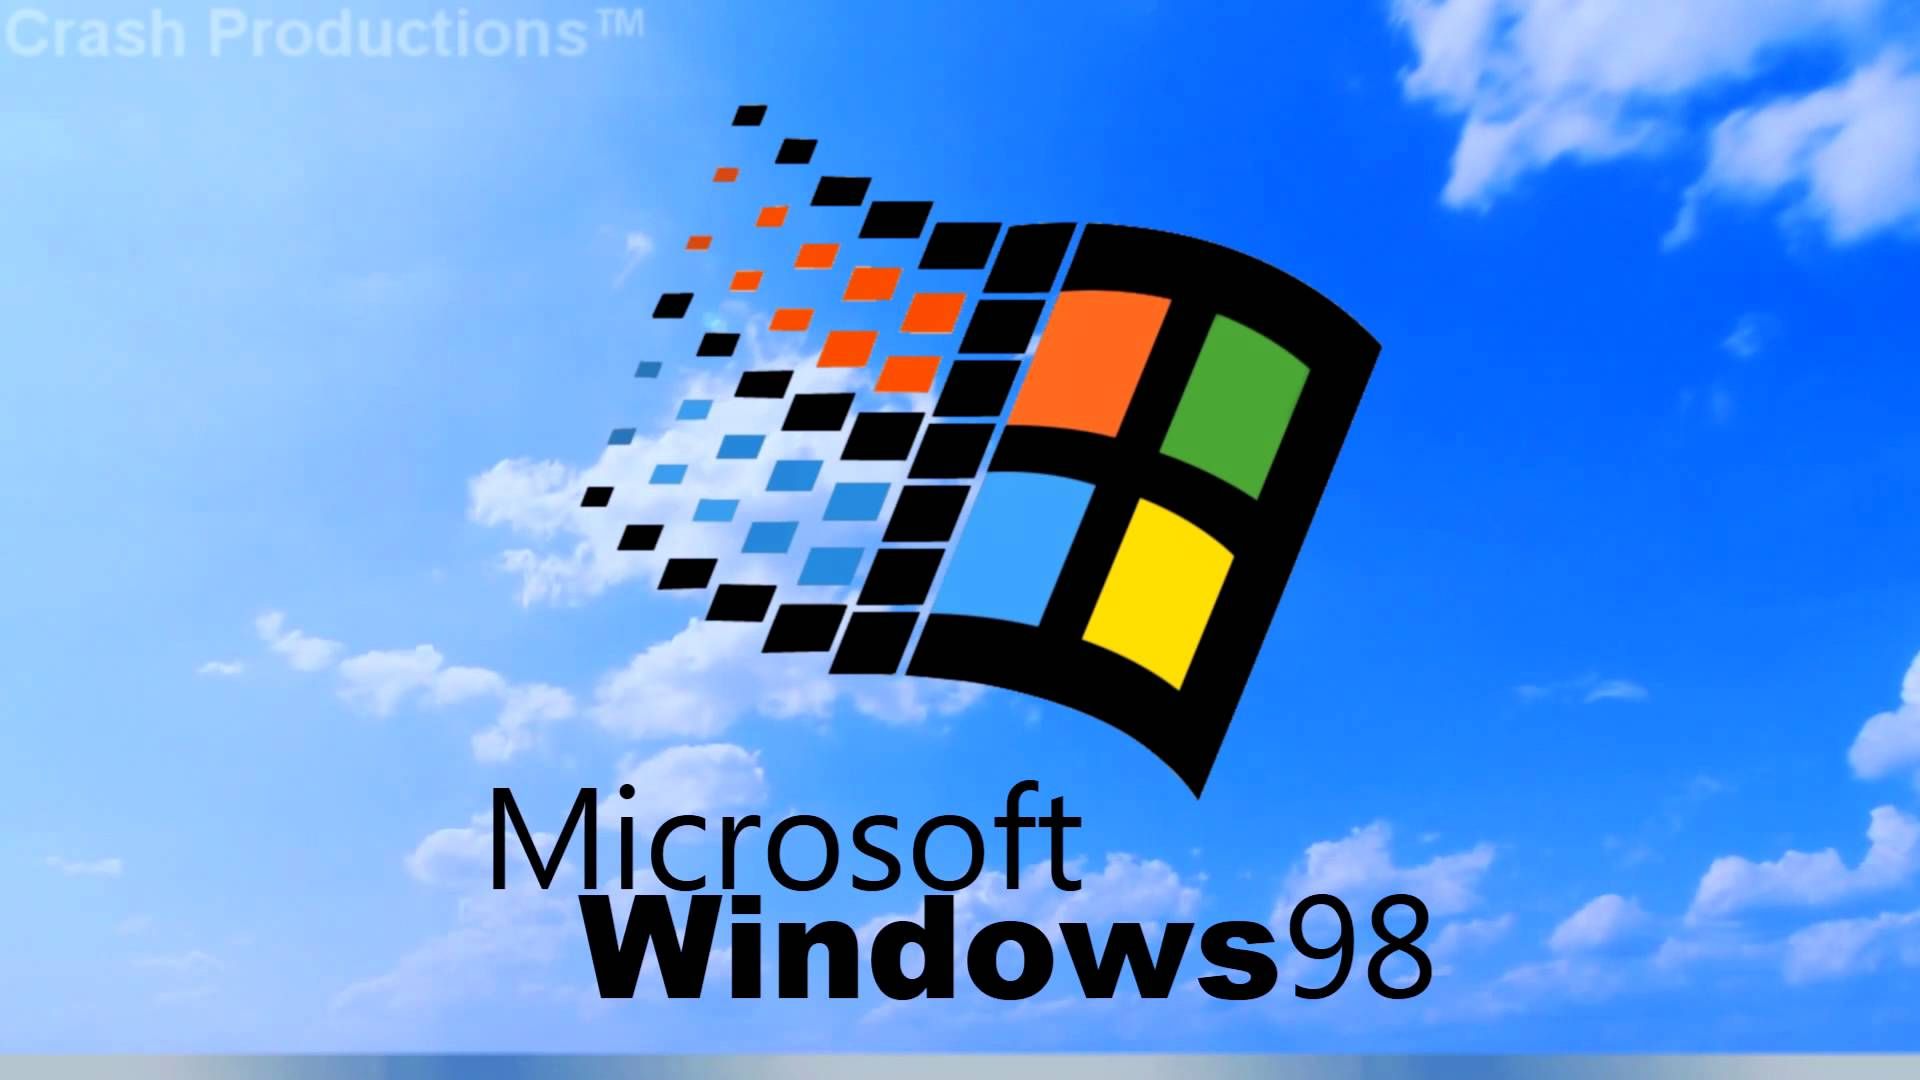 Windows 98 Wallpaper. Windows Wallpaper, Windows